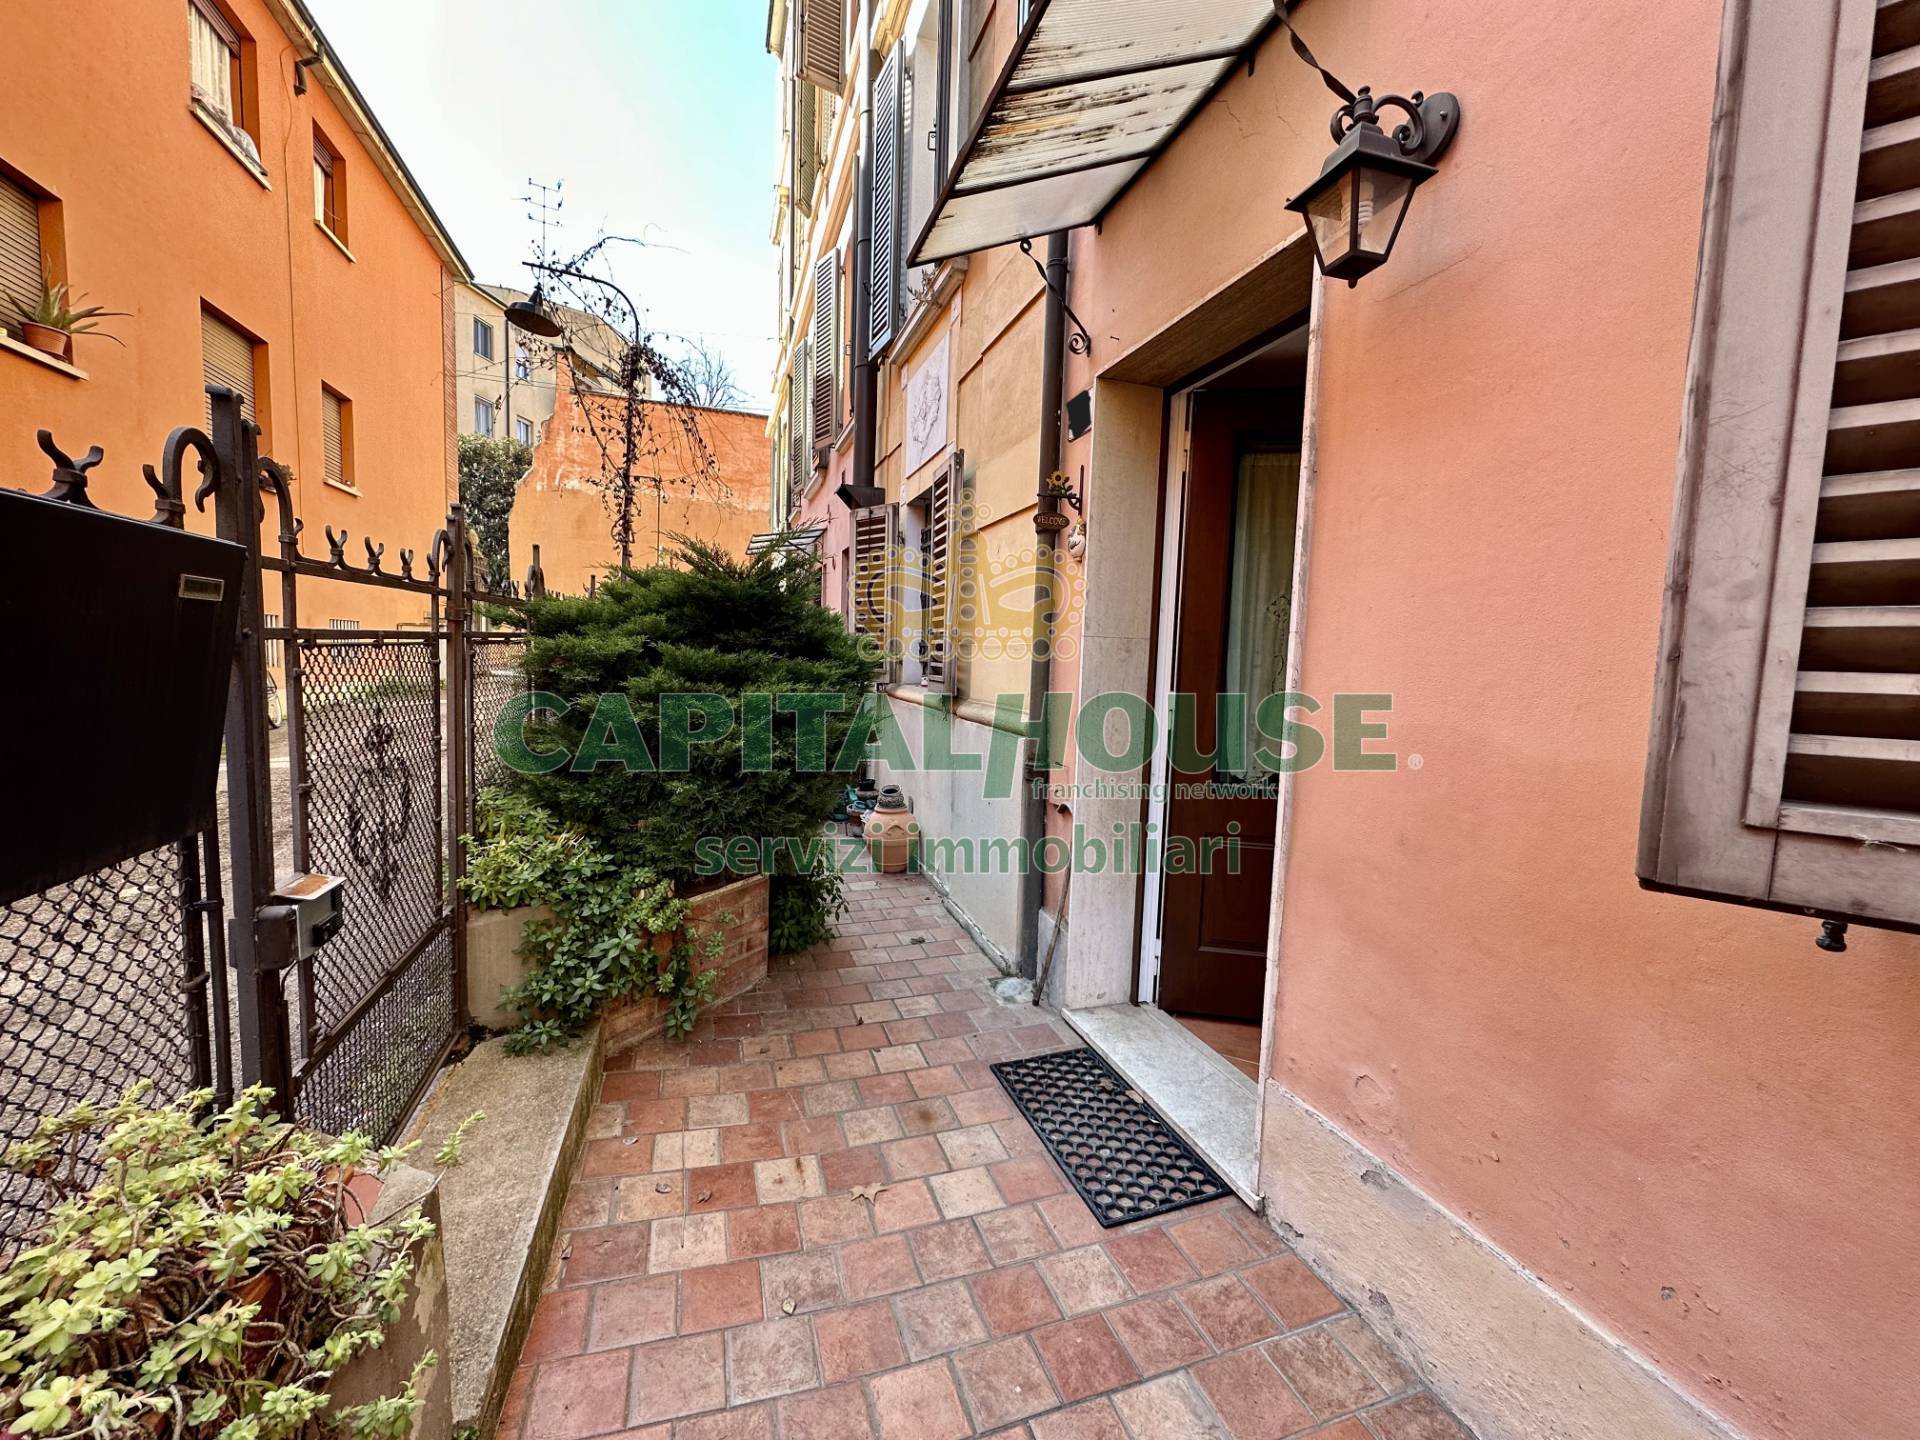 Appartamento in vendita a Bologna, 3 locali, zona Località: Centrostorico, prezzo € 325.000 | PortaleAgenzieImmobiliari.it